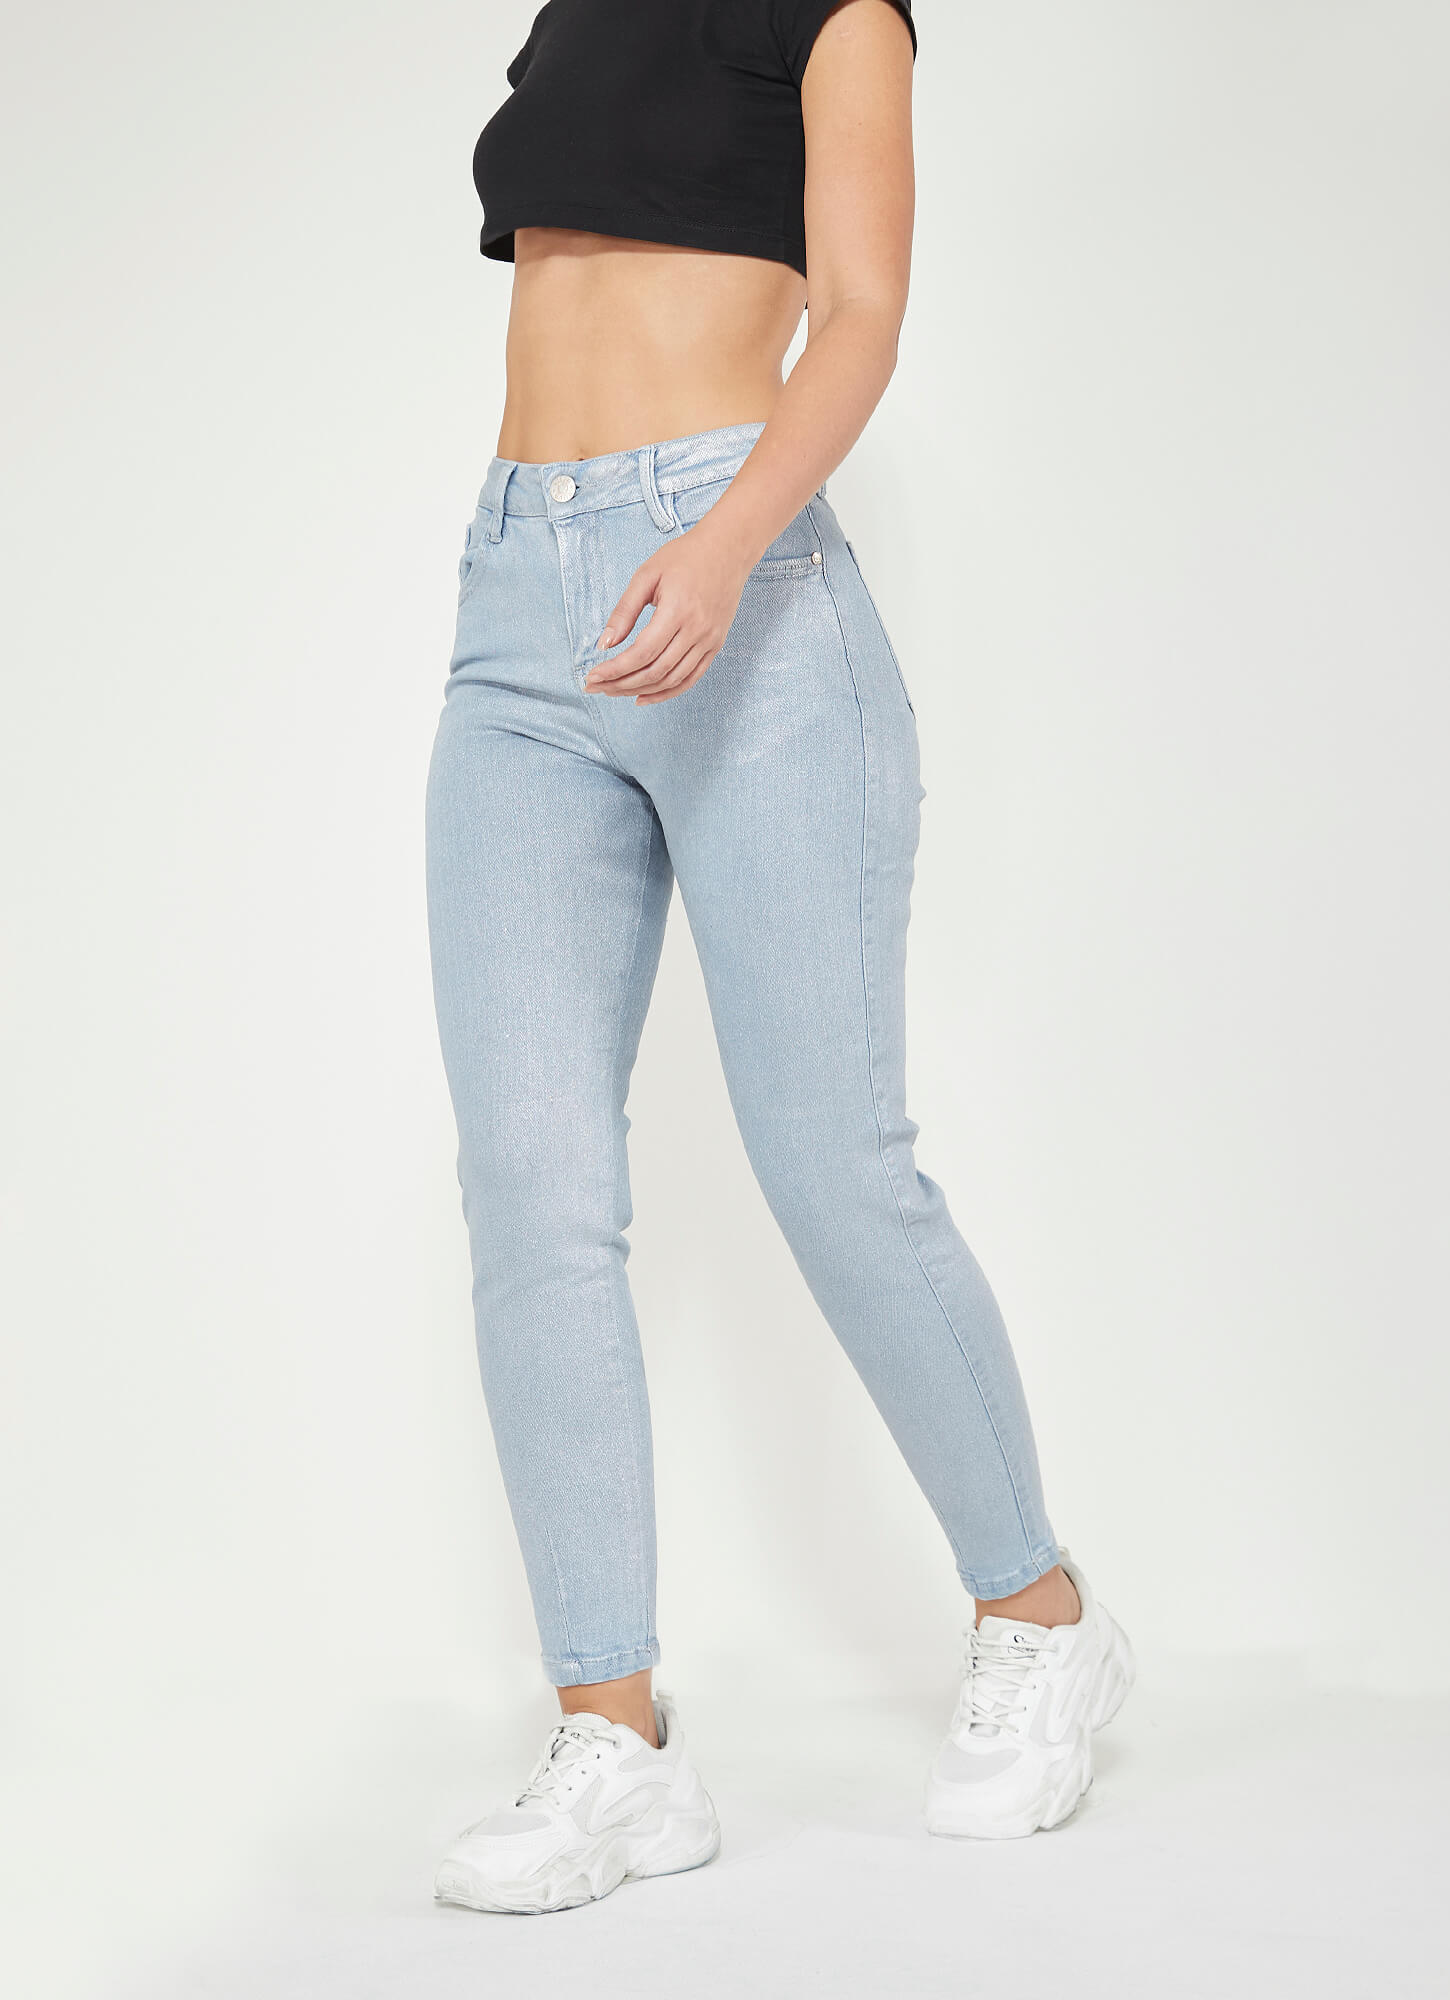 GENERICO Jeans de mujer focalizado con aplicaciones Msco Jeans